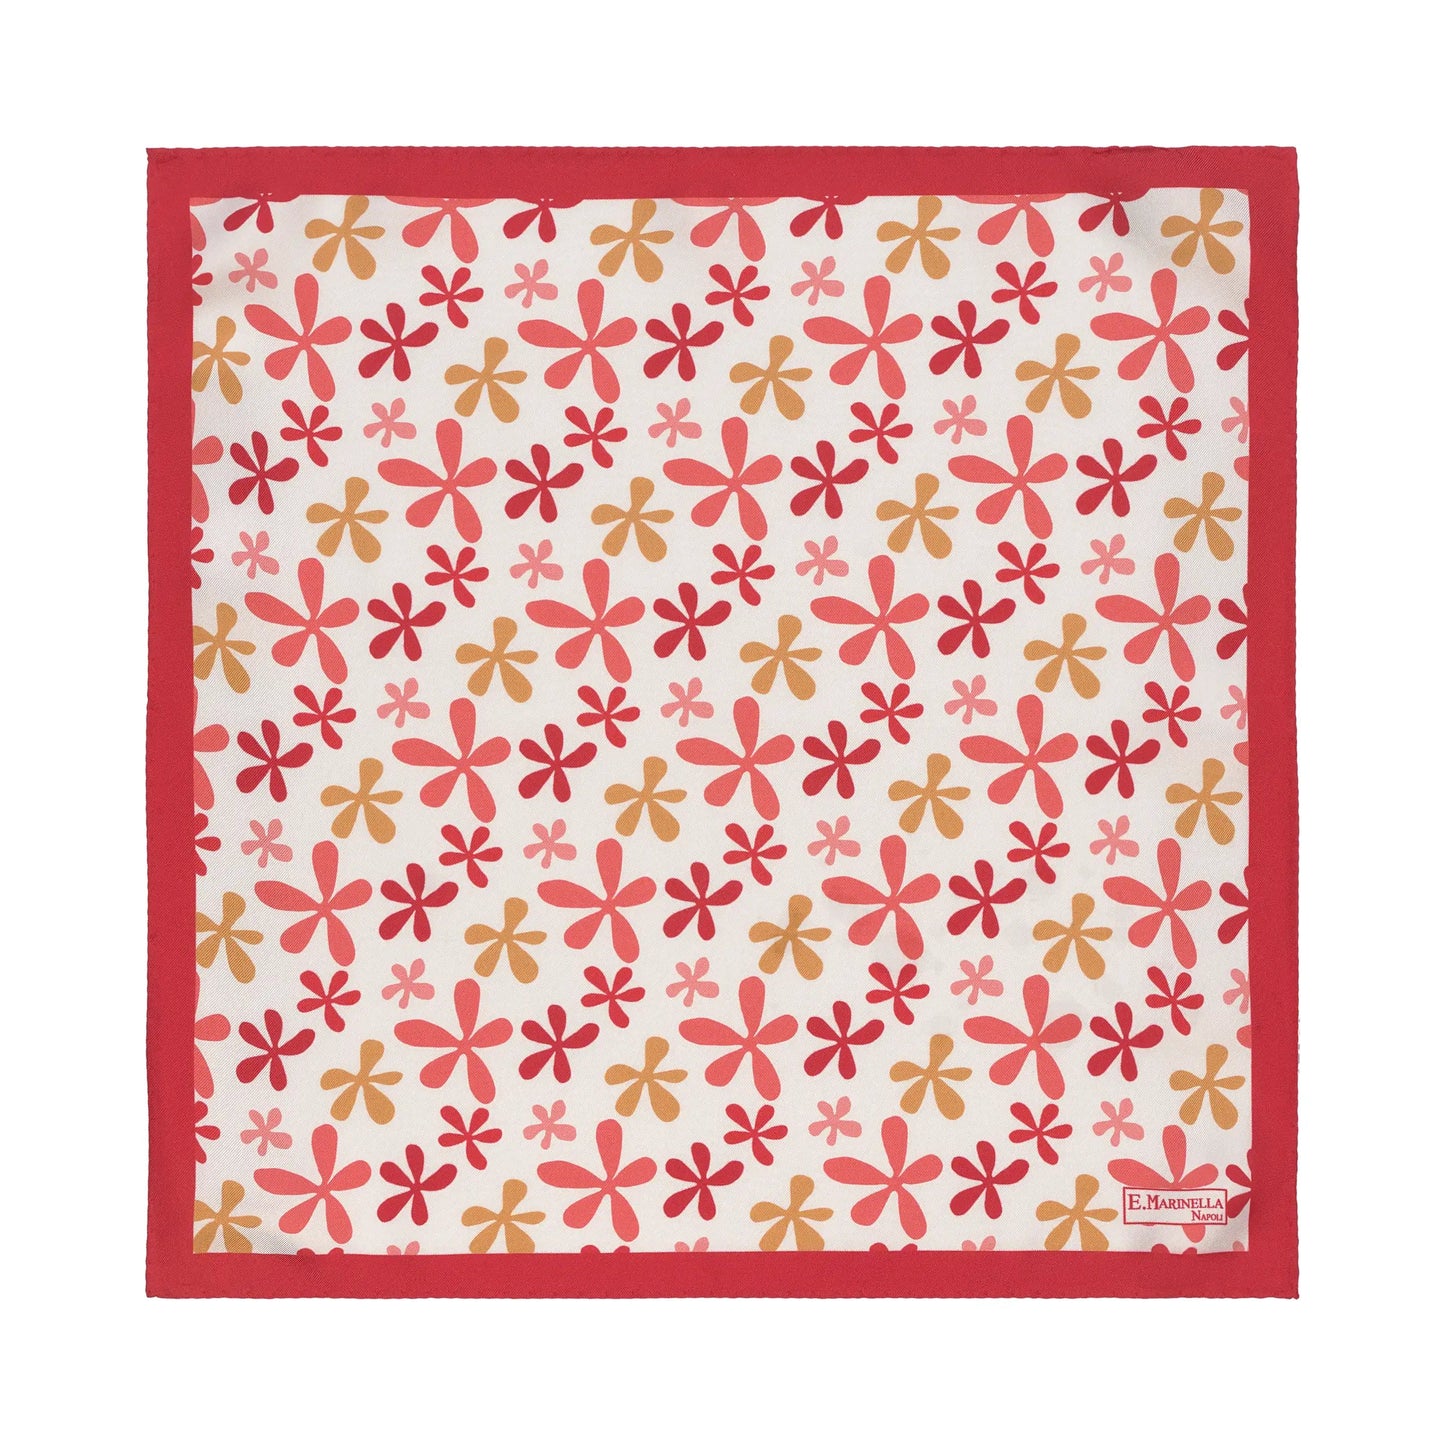 E.Marinella Printed Silk Pocket Square in Red and White - SARTALE